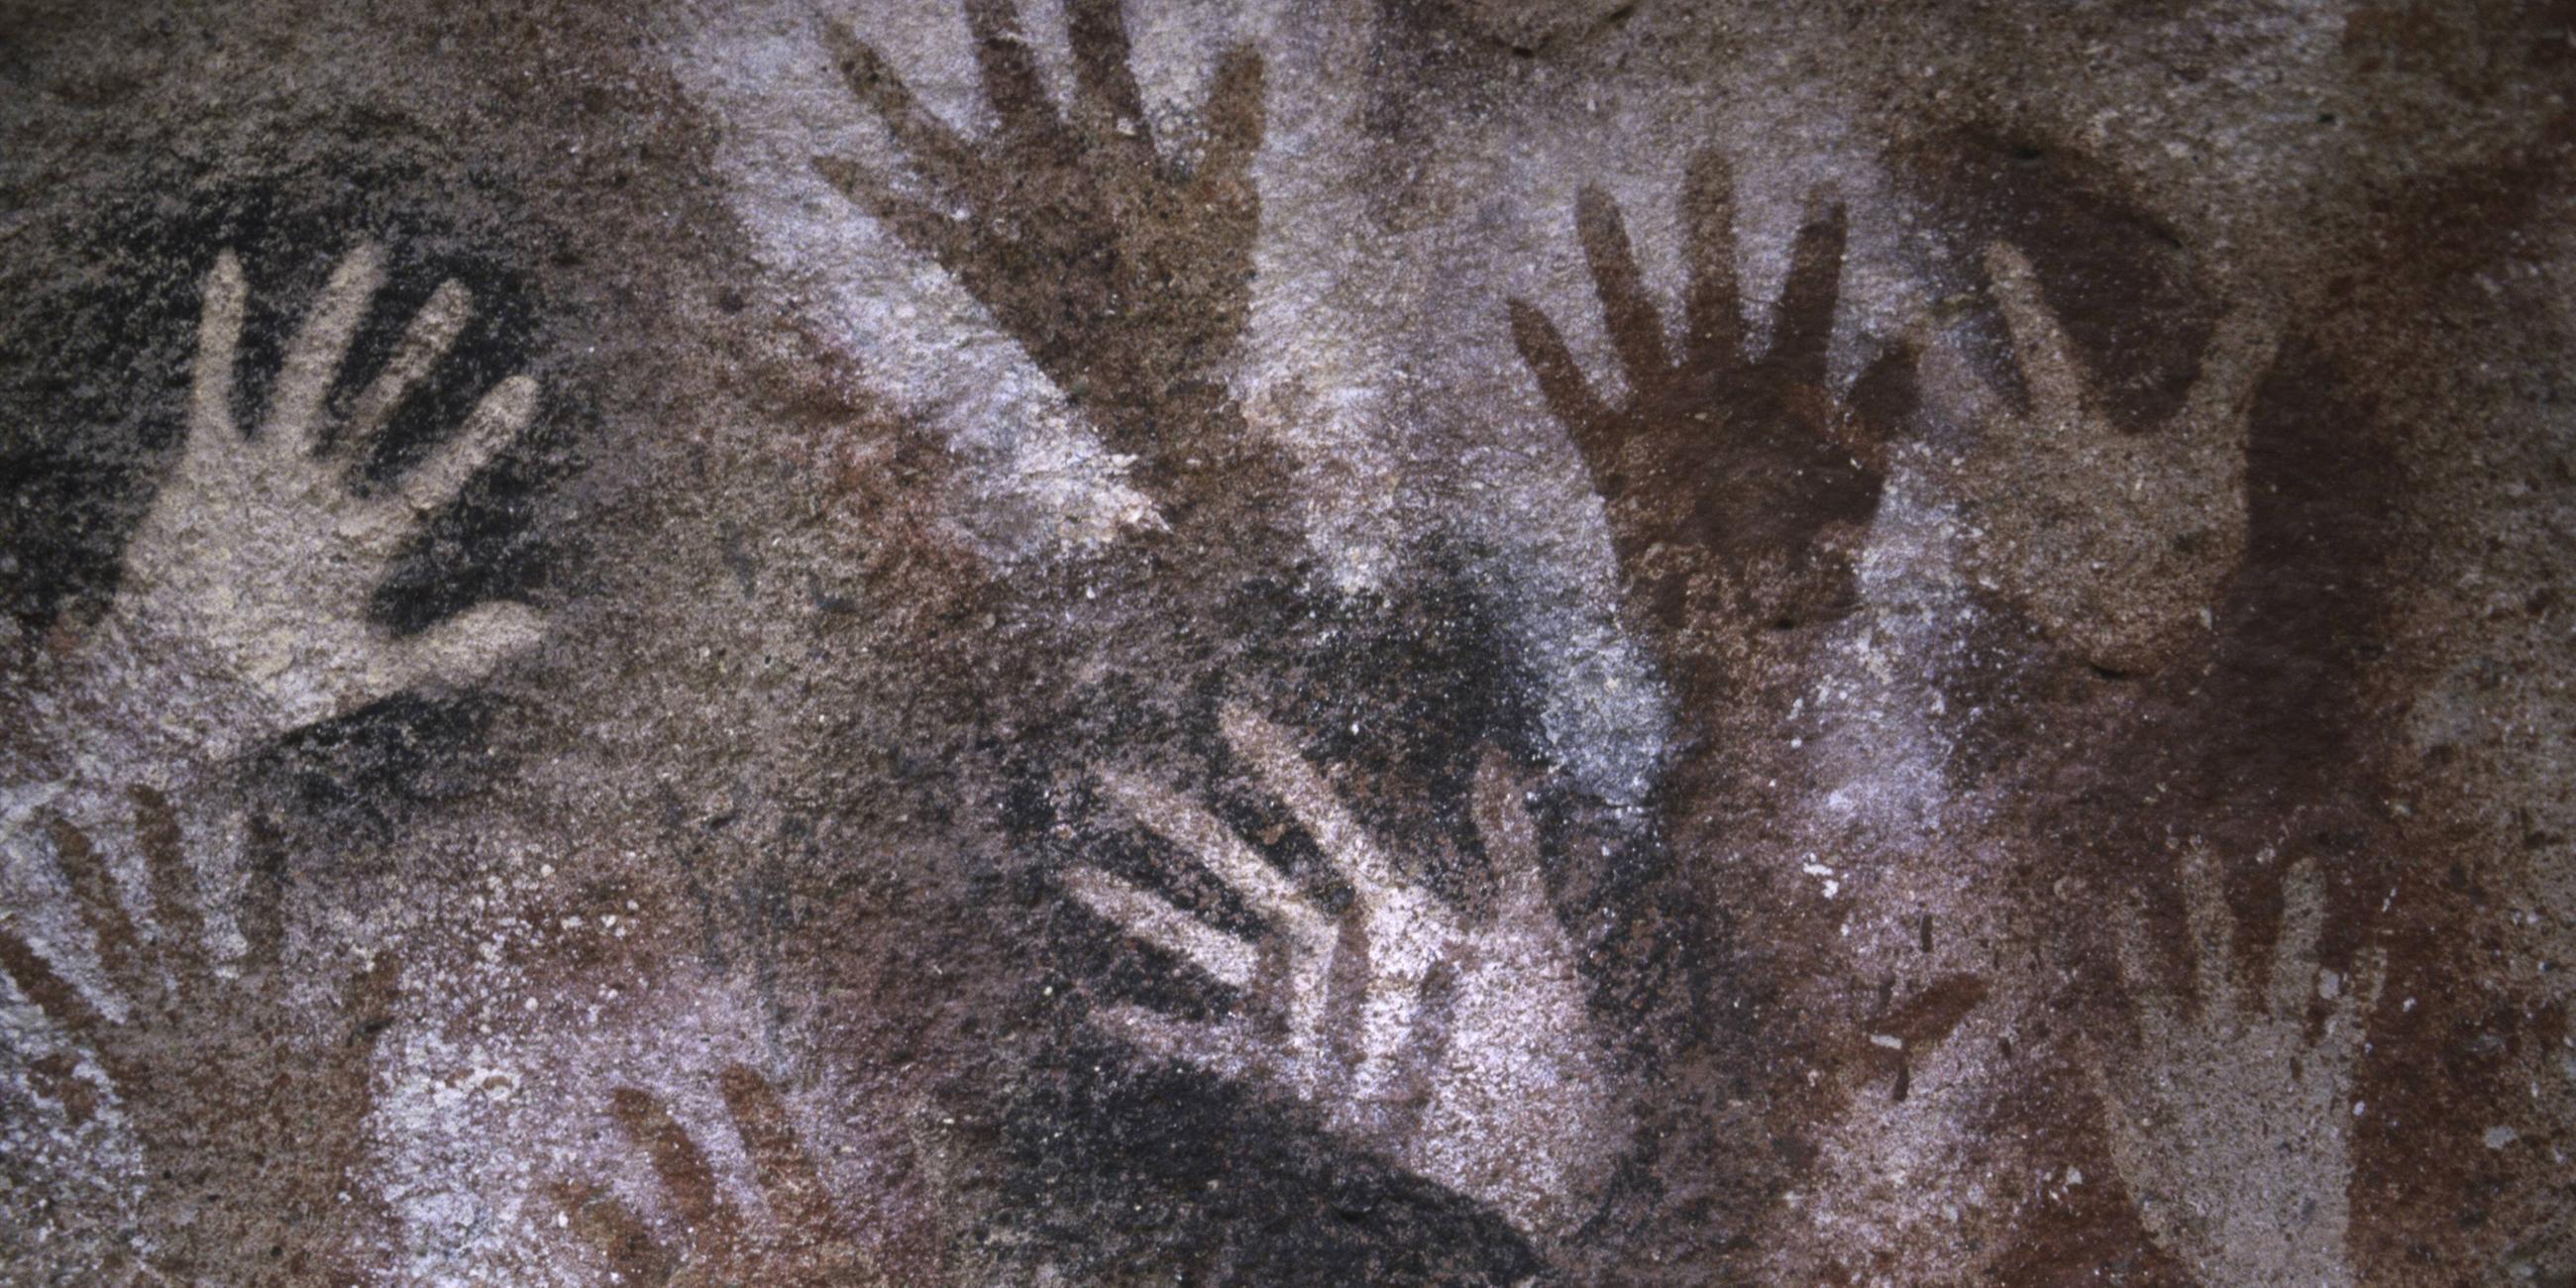 Steinzeitliche Höhlenmalereien in Form von Handabdrücken in der "Cueva de las manos" in Patagonien, Argentinien